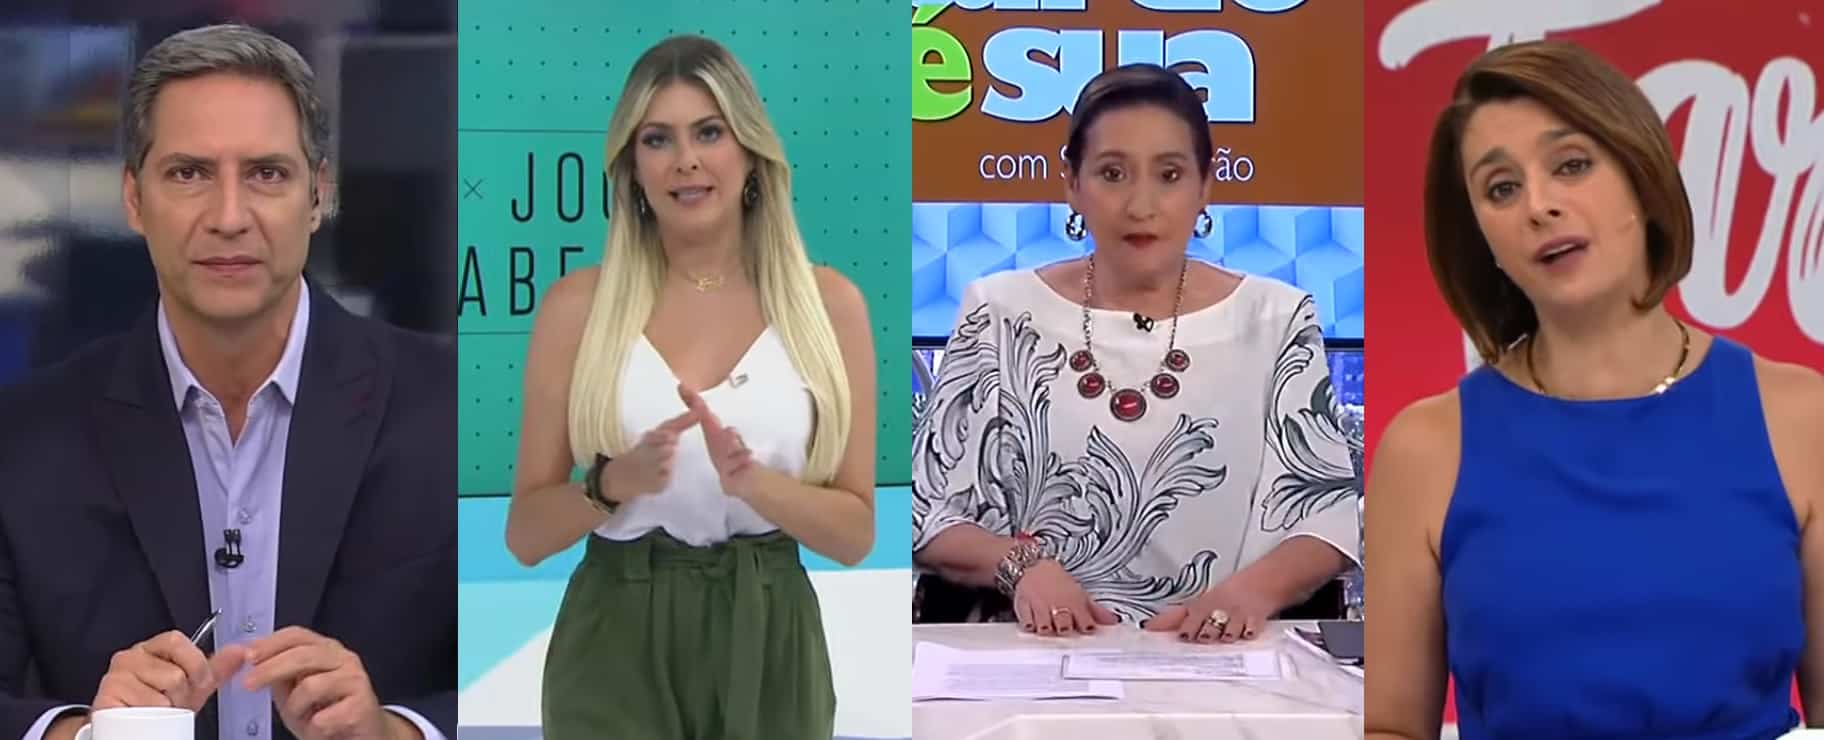 Opinião No ar leva surra do Jogo Aberto; Sonia Abrão vence Melhor da Tarde